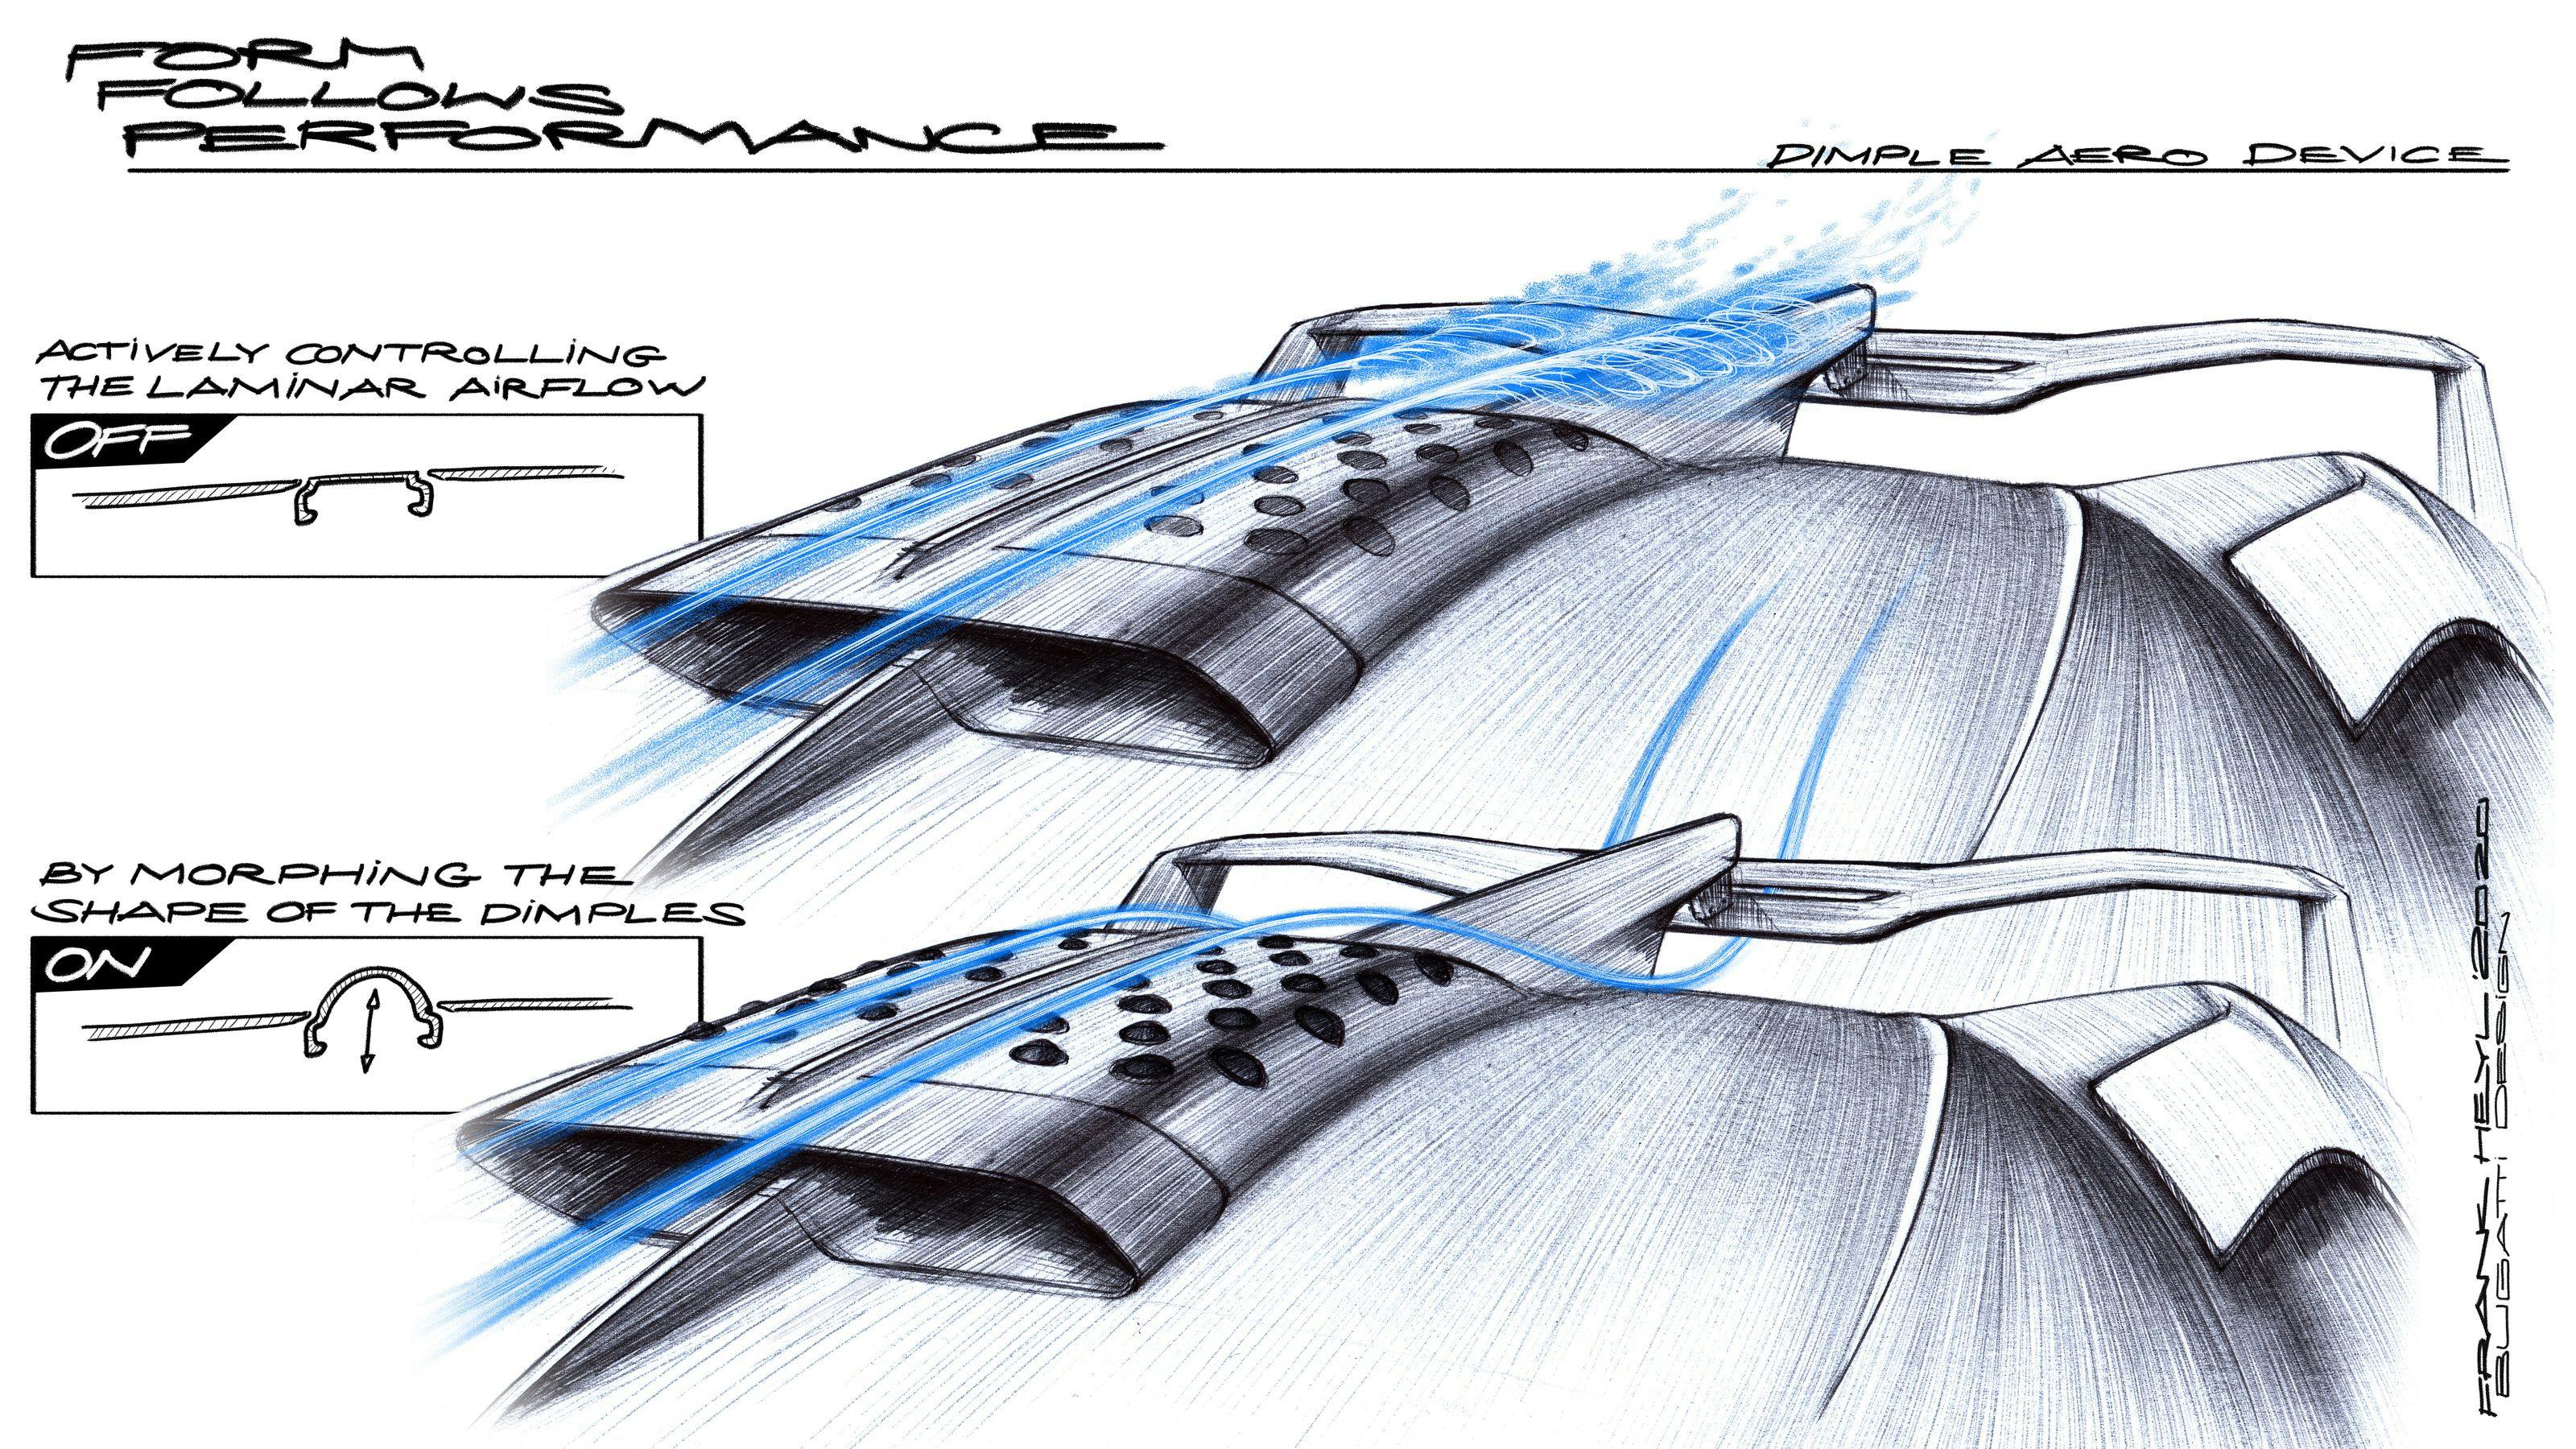 La prise d’air à alvéoles de Bugatti – une nouvelle invention qui améliore l’aérodynamique